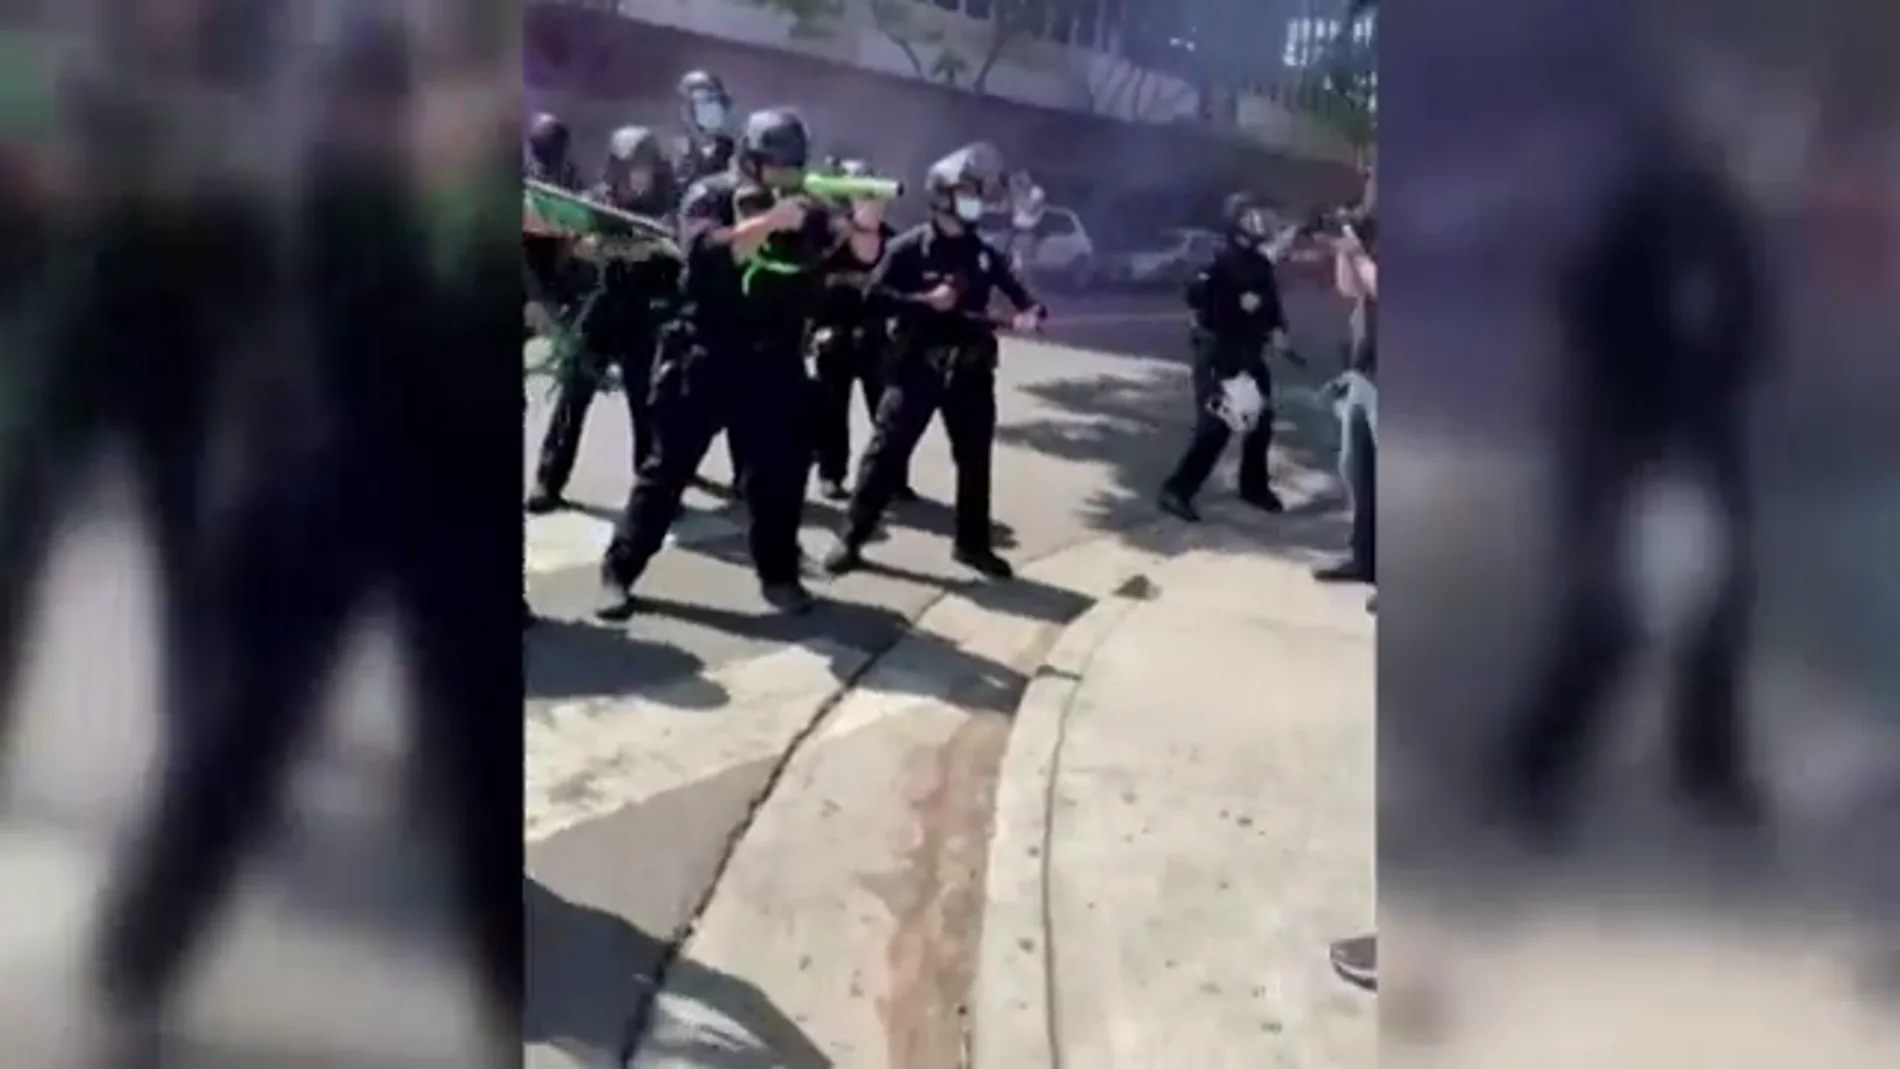 La policía de Los Ángeles carga contra activistas durante una protesta LGTBIQ+